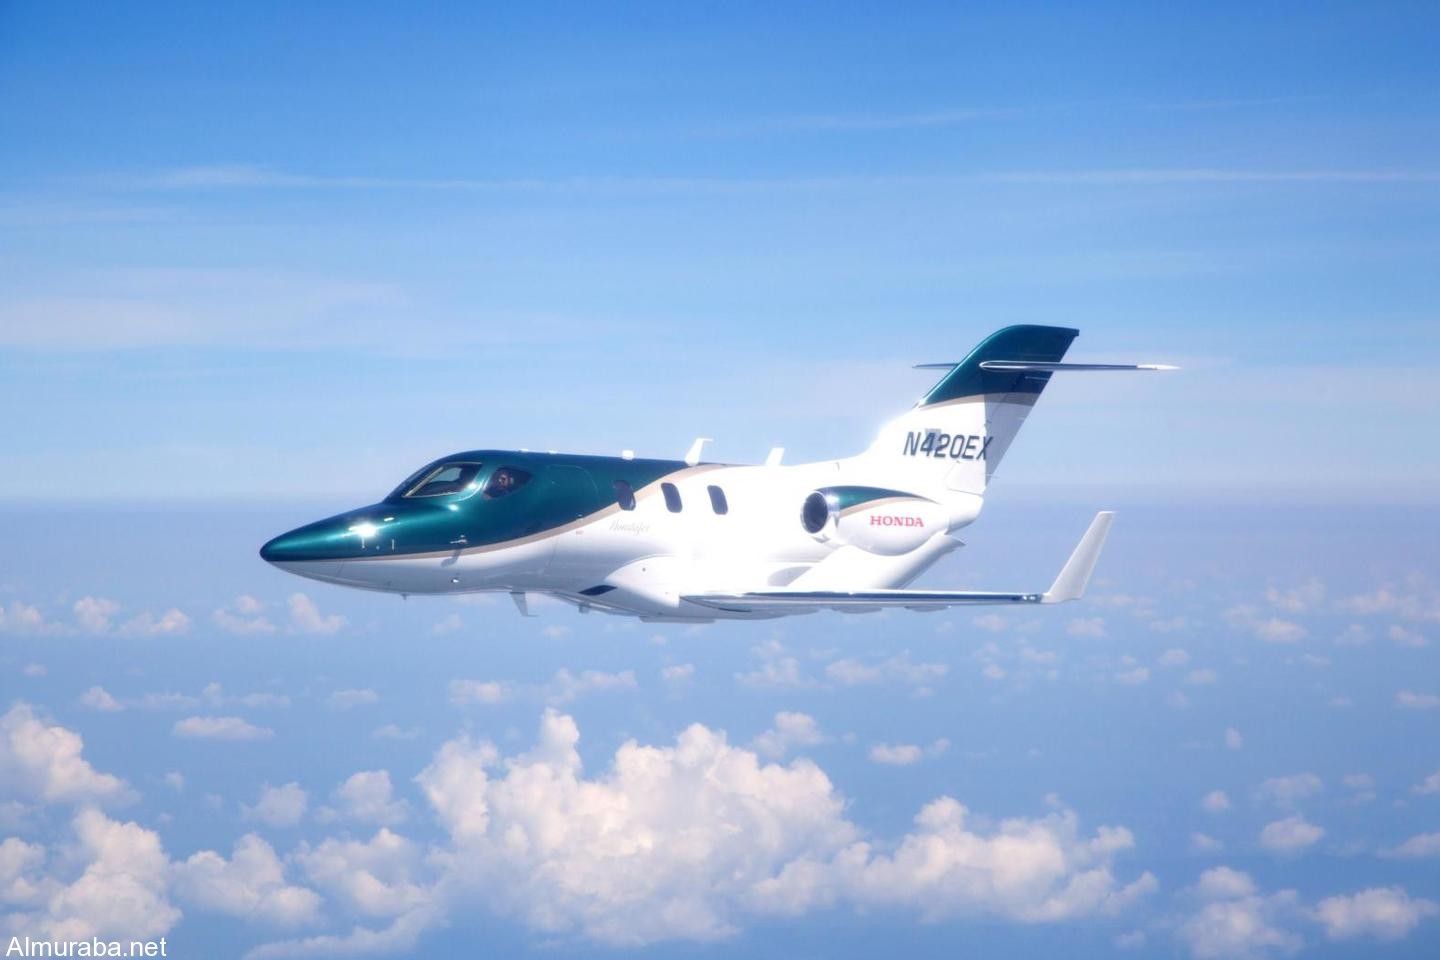 شركة “هوندا” تسلم أولى طائراتها الخاصة “هوندا جيت”بعد تطوير دام عشرين عاماً HondaJet